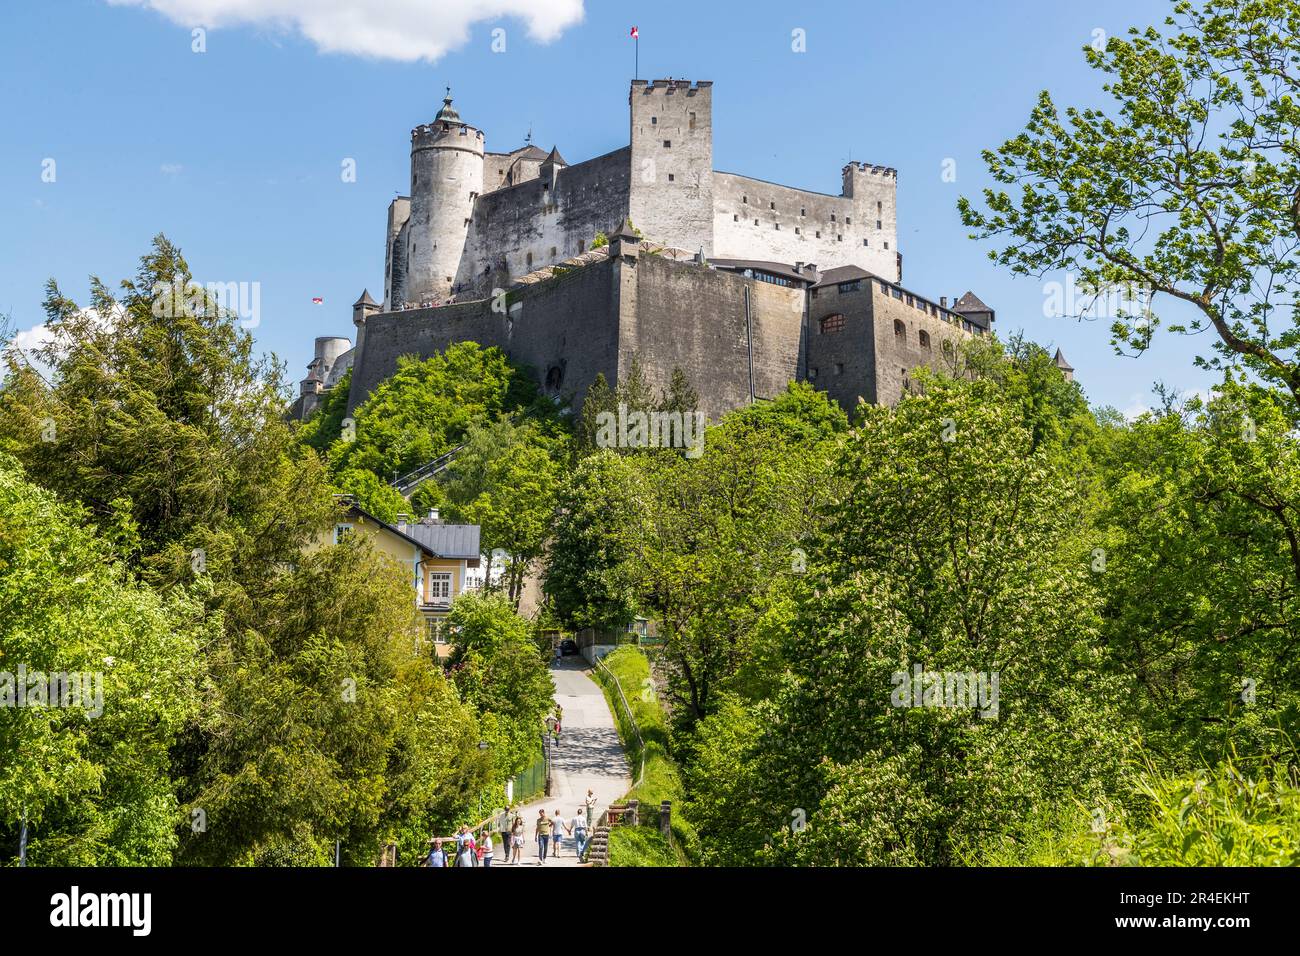 Die Festung Hohensalzburg ist zusammen mit der Salzburger Altstadt ein UNESCO-Weltkulturerbe. Salzburg, Österreich Stockfoto